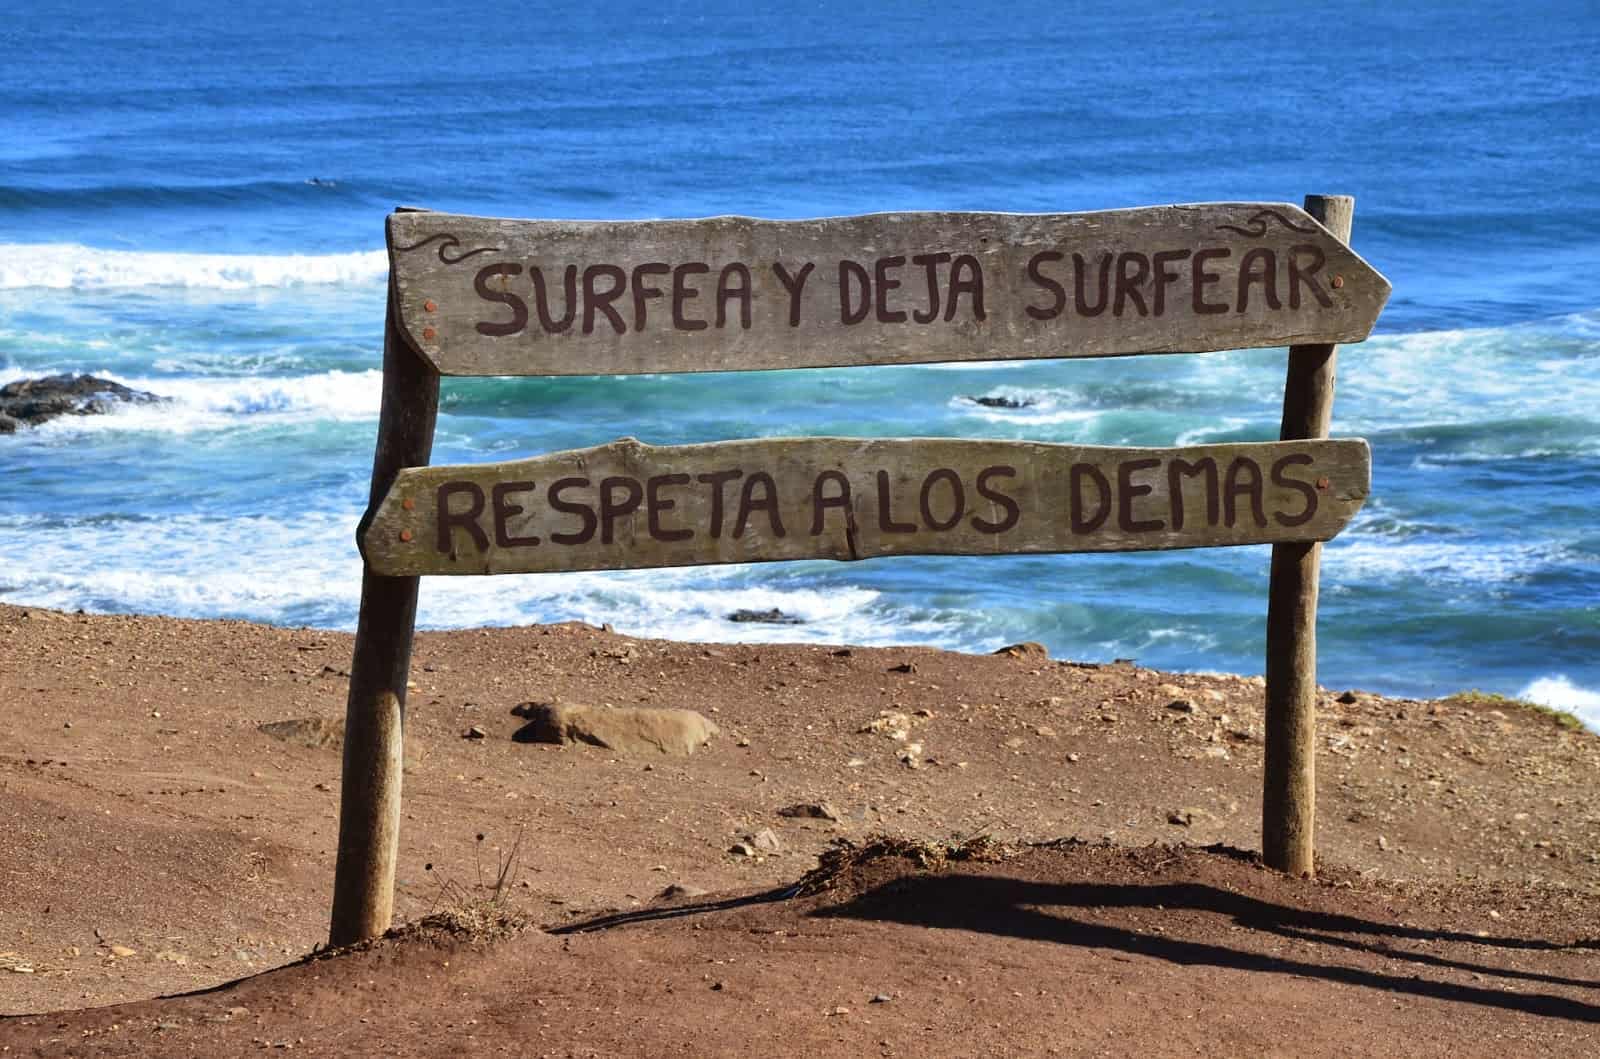 "Surf and let surf" at Punta de Lobos, Pichilemu, Chile